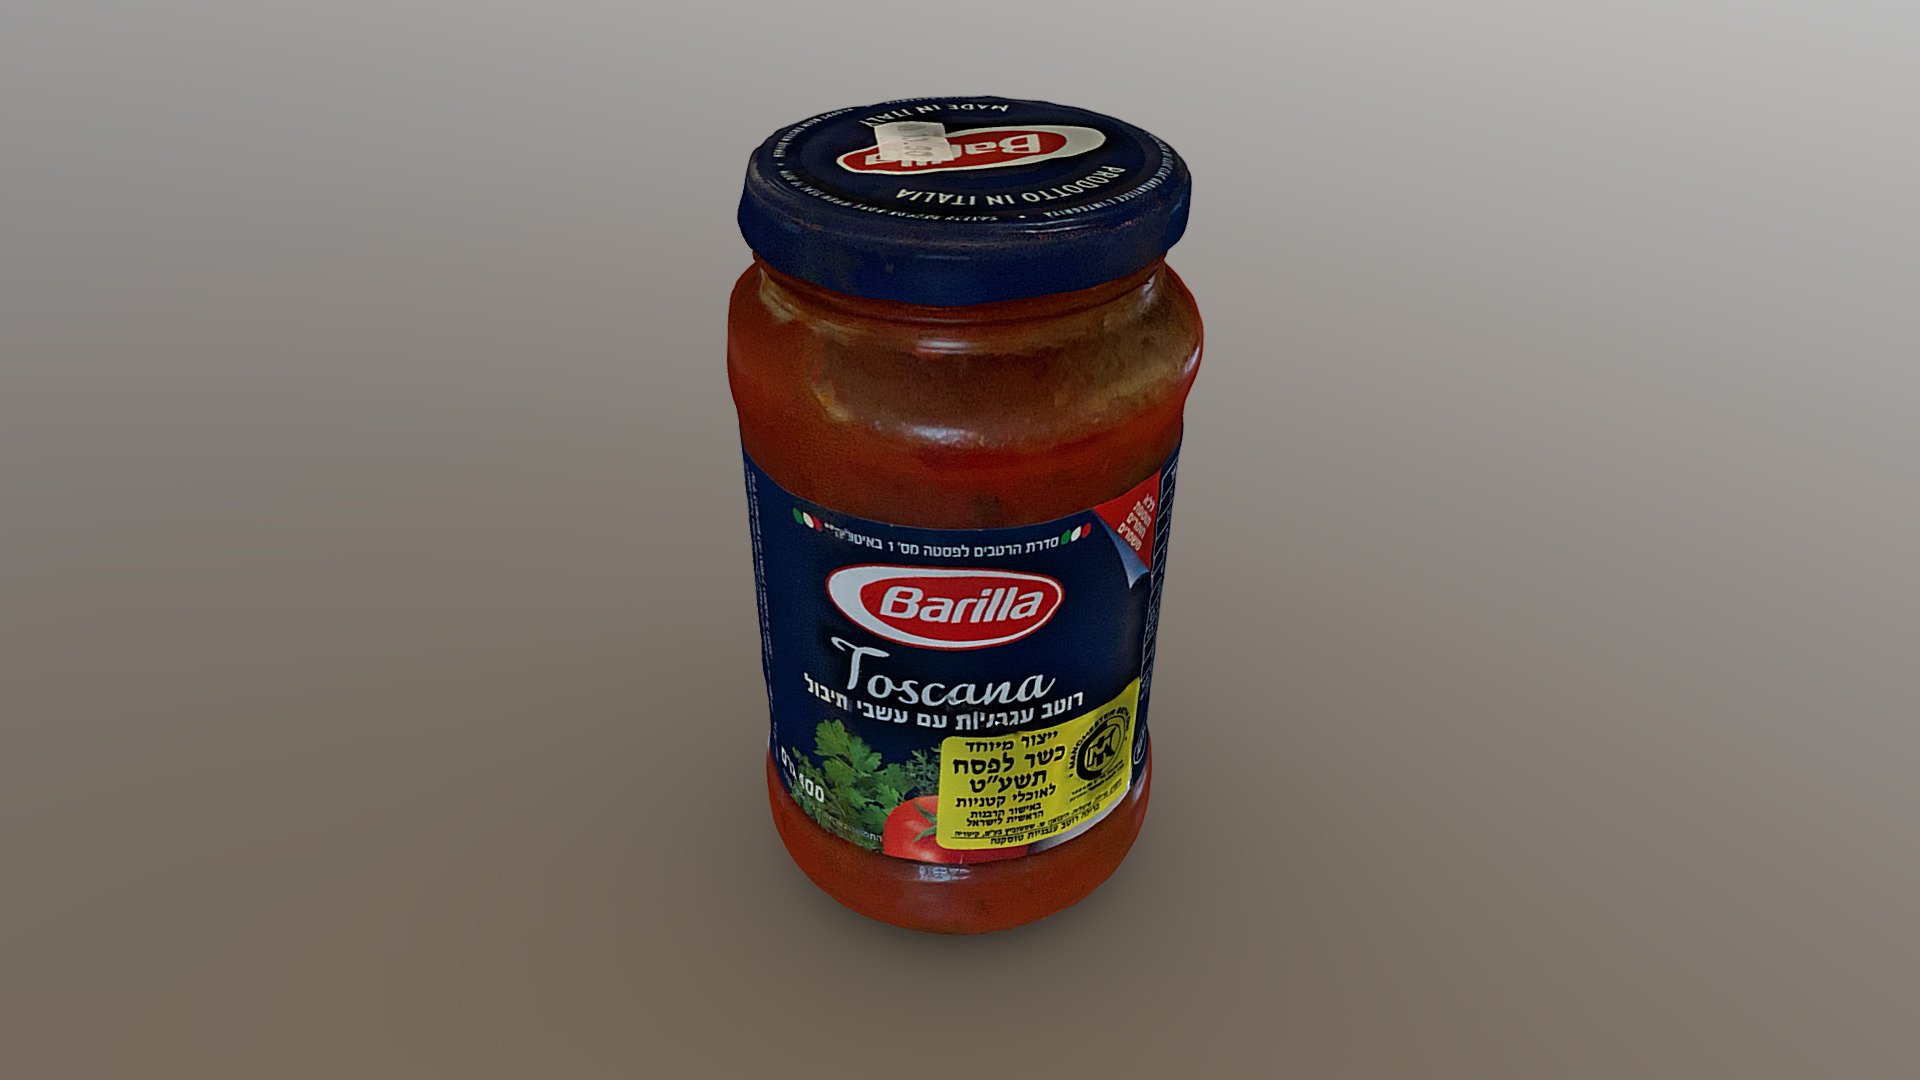 Barilla tomato sauce - Barilla Sauce - 3D model by Ronen (@ronenh) 3d model